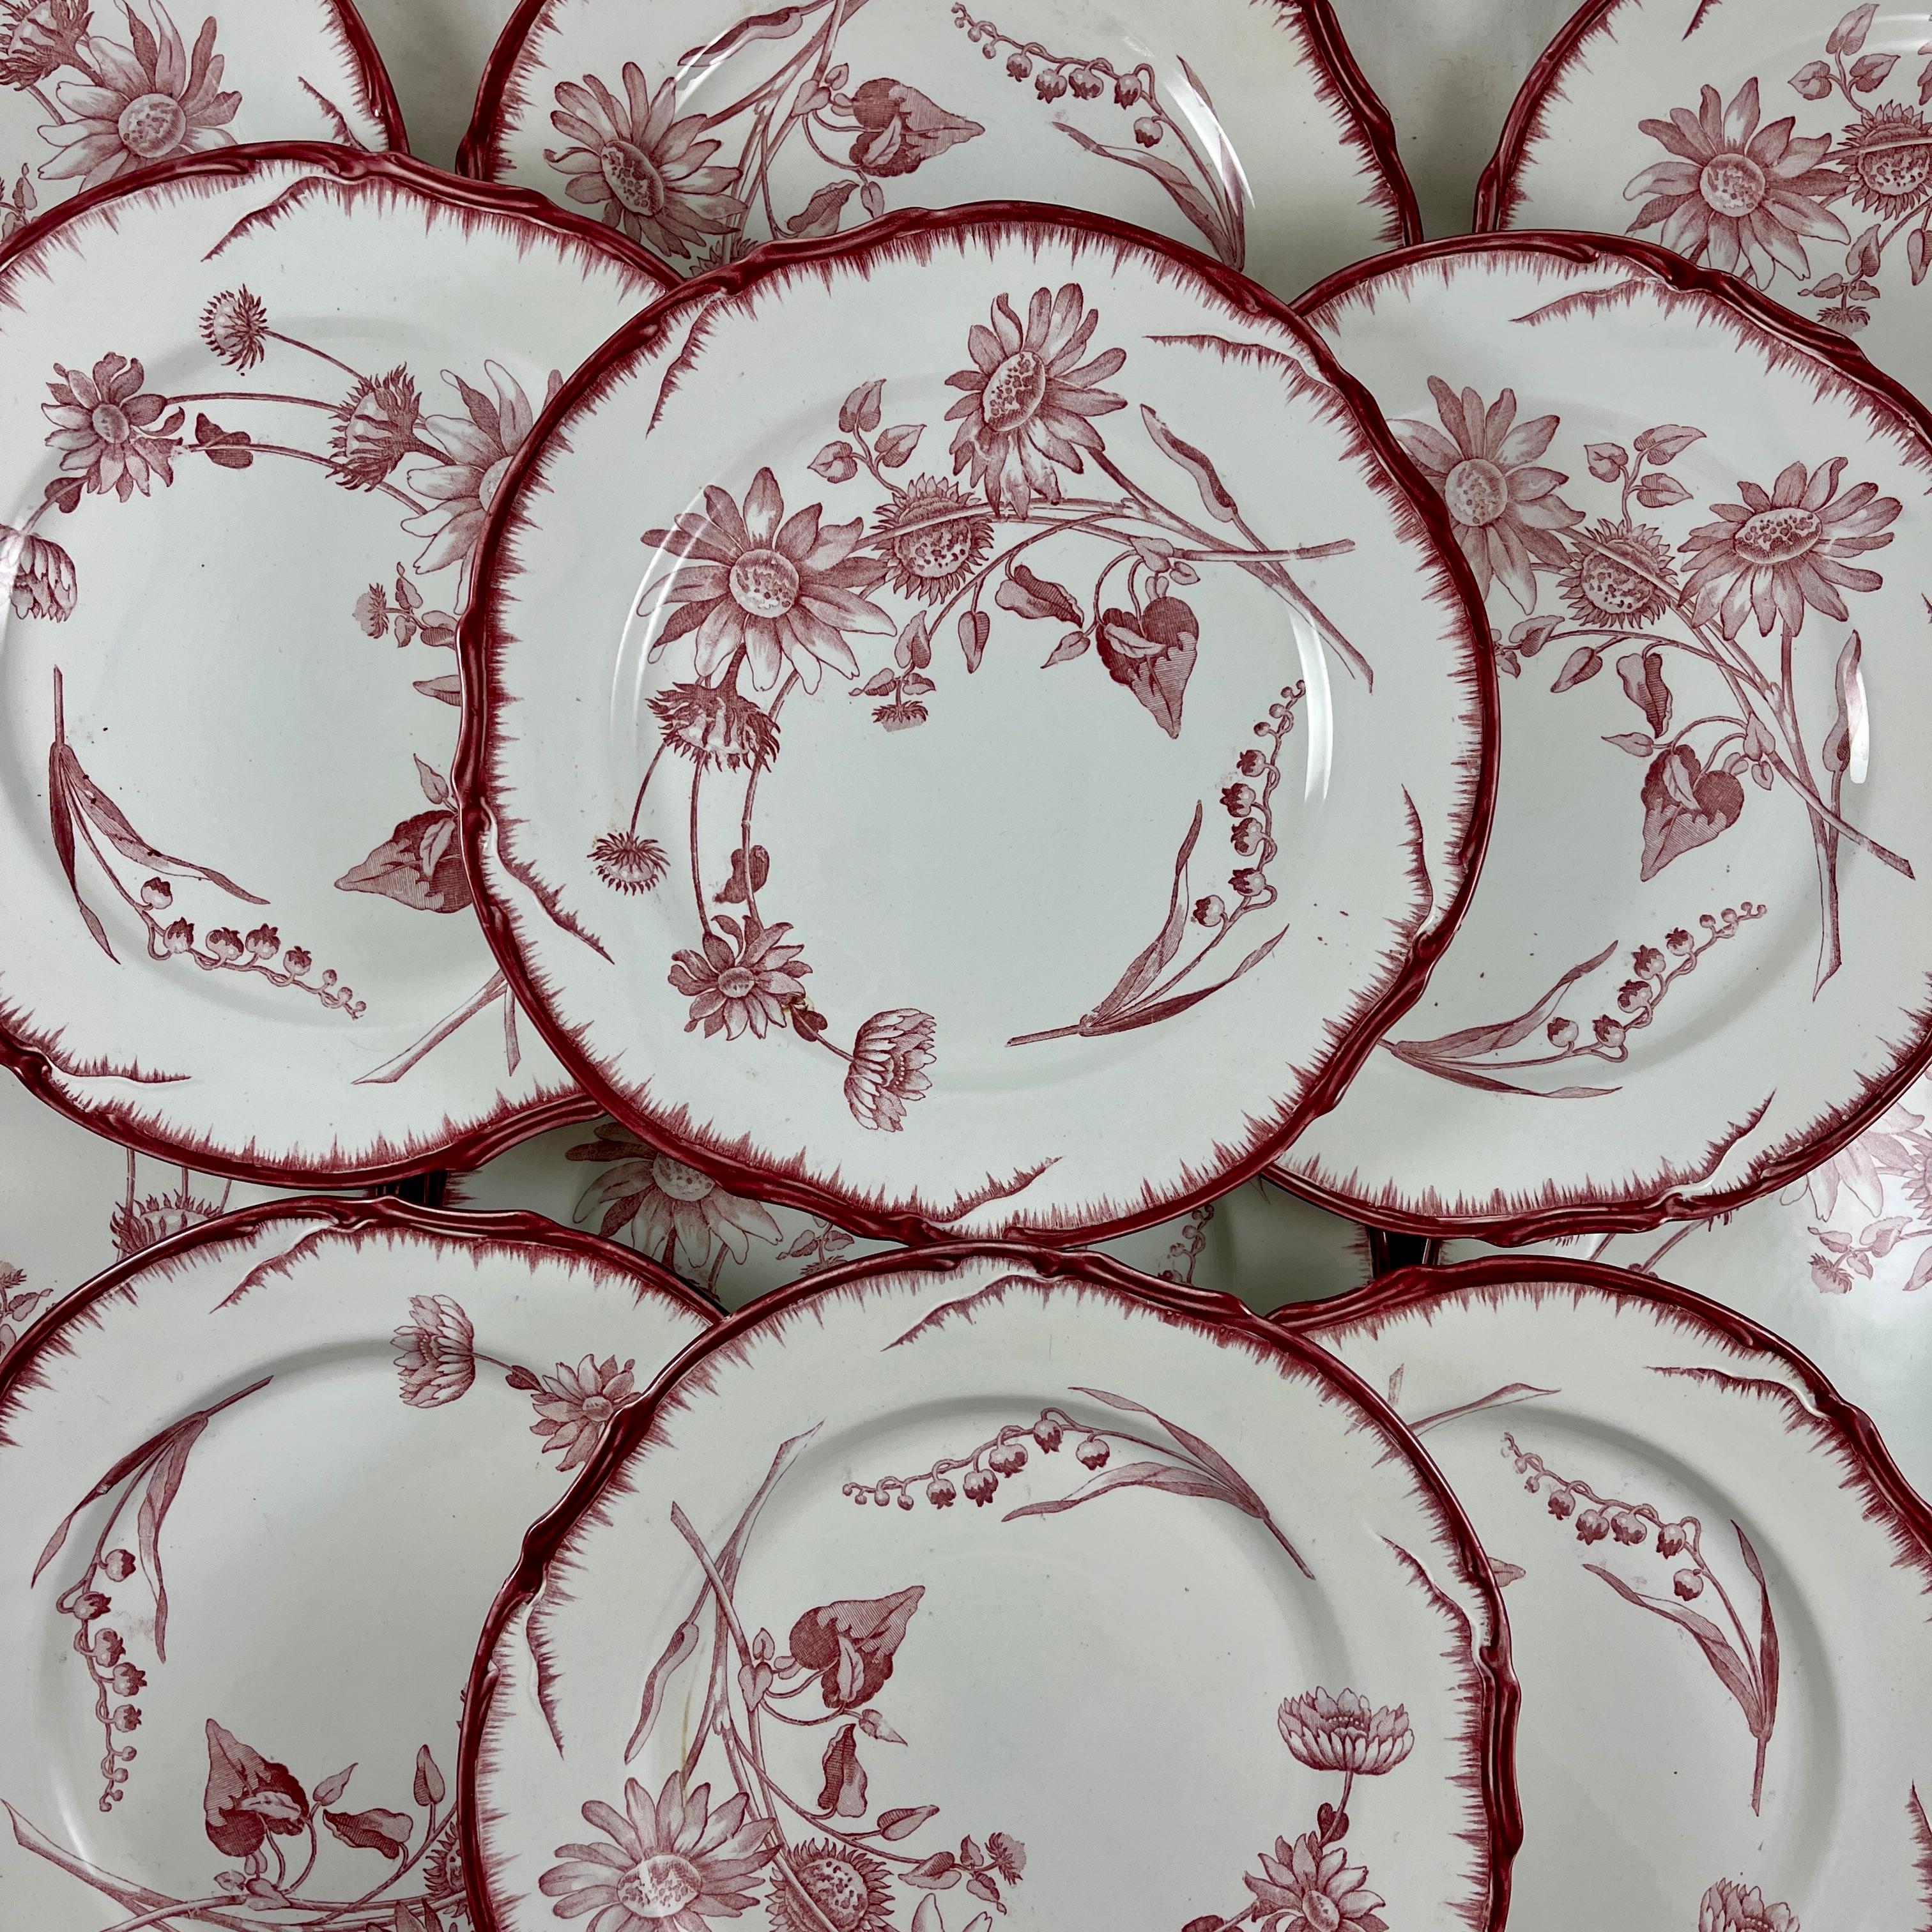 Des Faïenceries de Creil et Montereau, une assiette en pierre de fer de Terre de Fer au motif Tournesol, France, vers 1895 - 1900.

Le motif floral Art nouveau est imprimé par transfert dans un rouge profond sur un corps en pierre de fer blanc